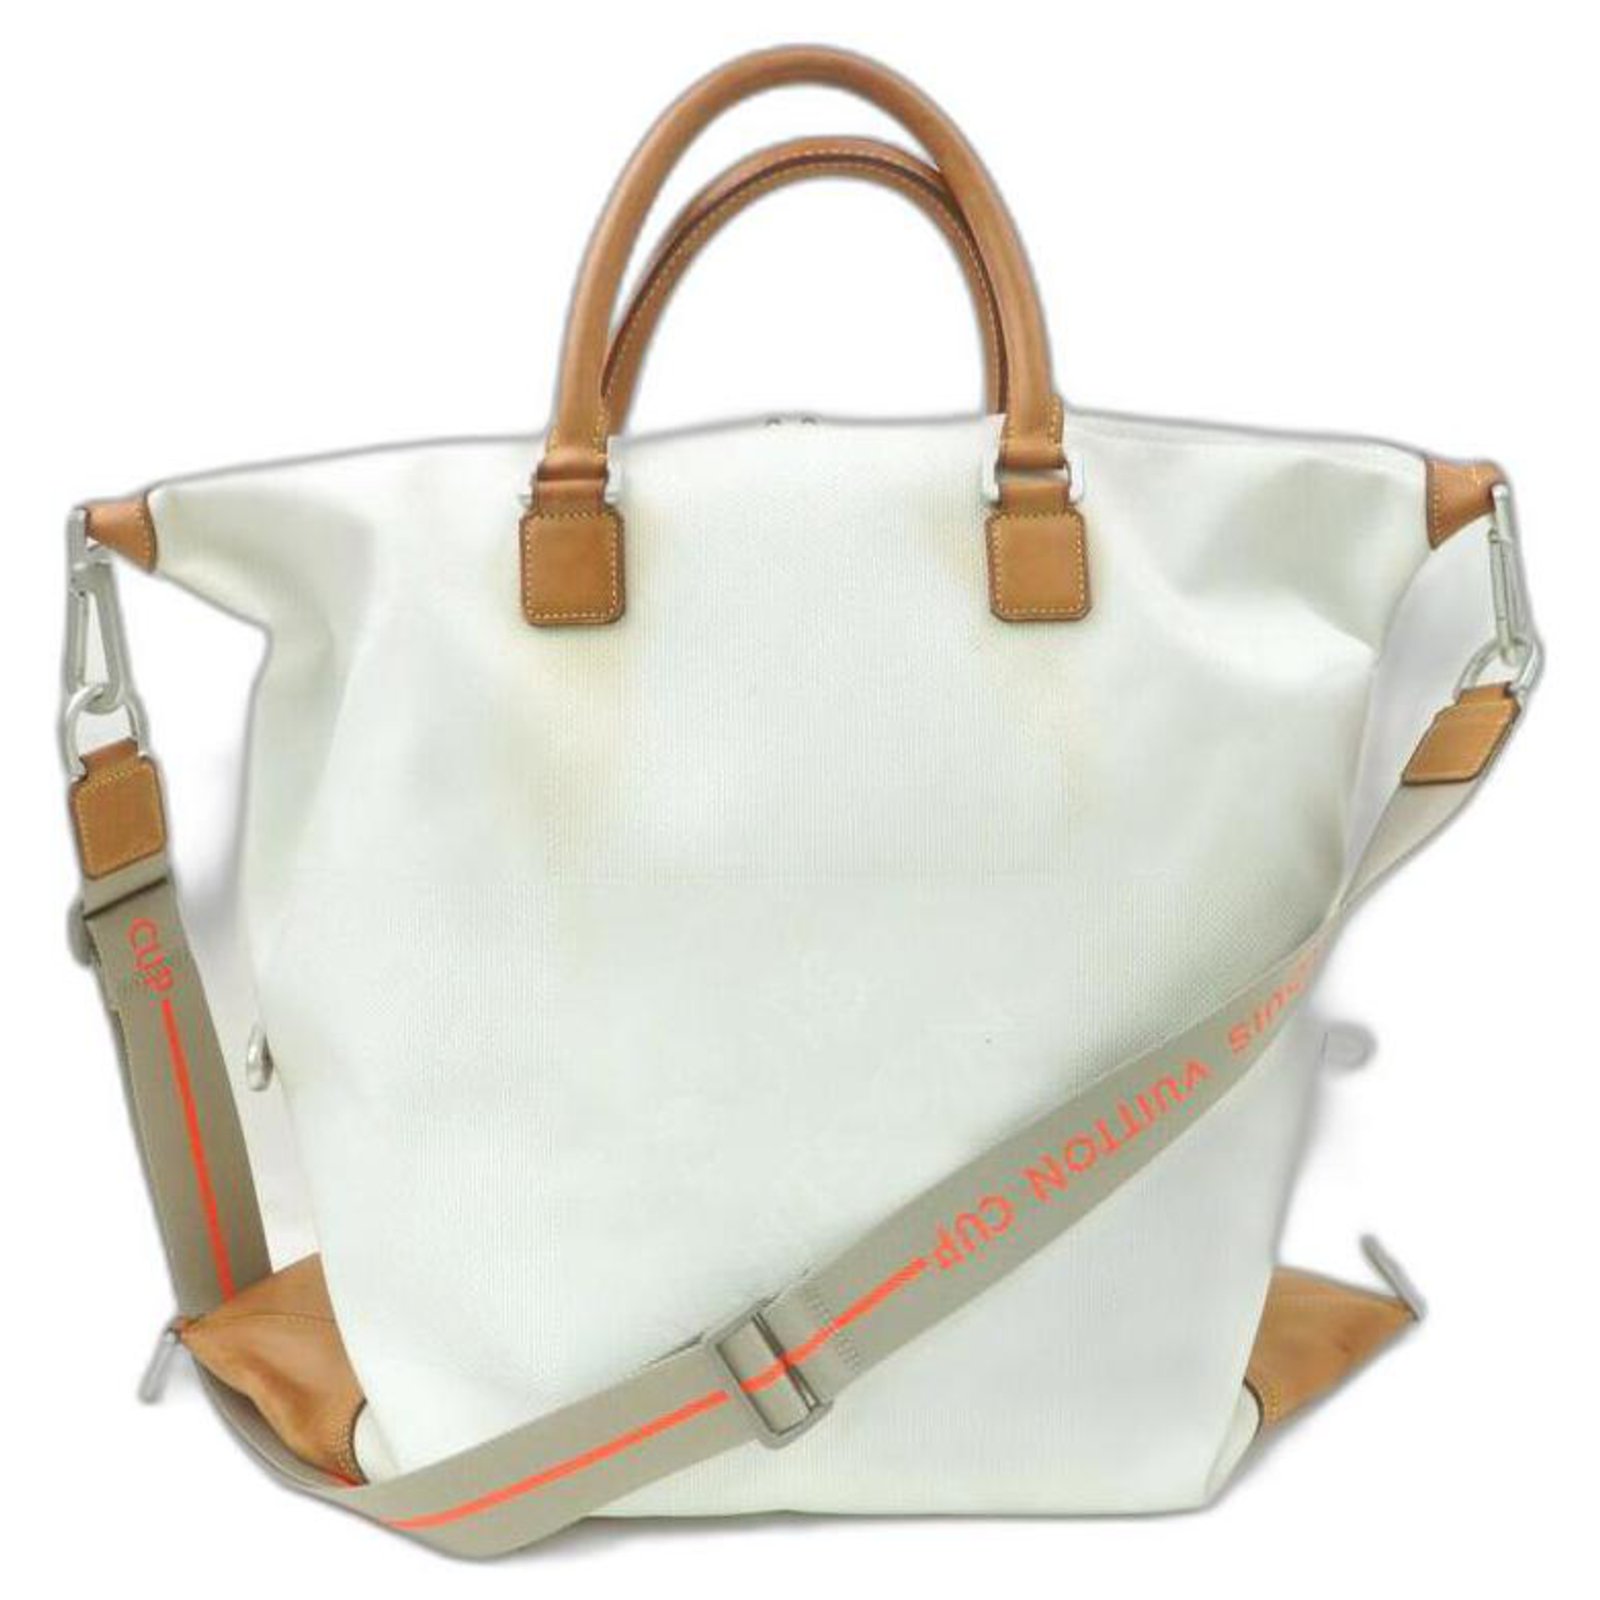 Louis Vuitton Duffle Bag 2way shoulder(Brown)